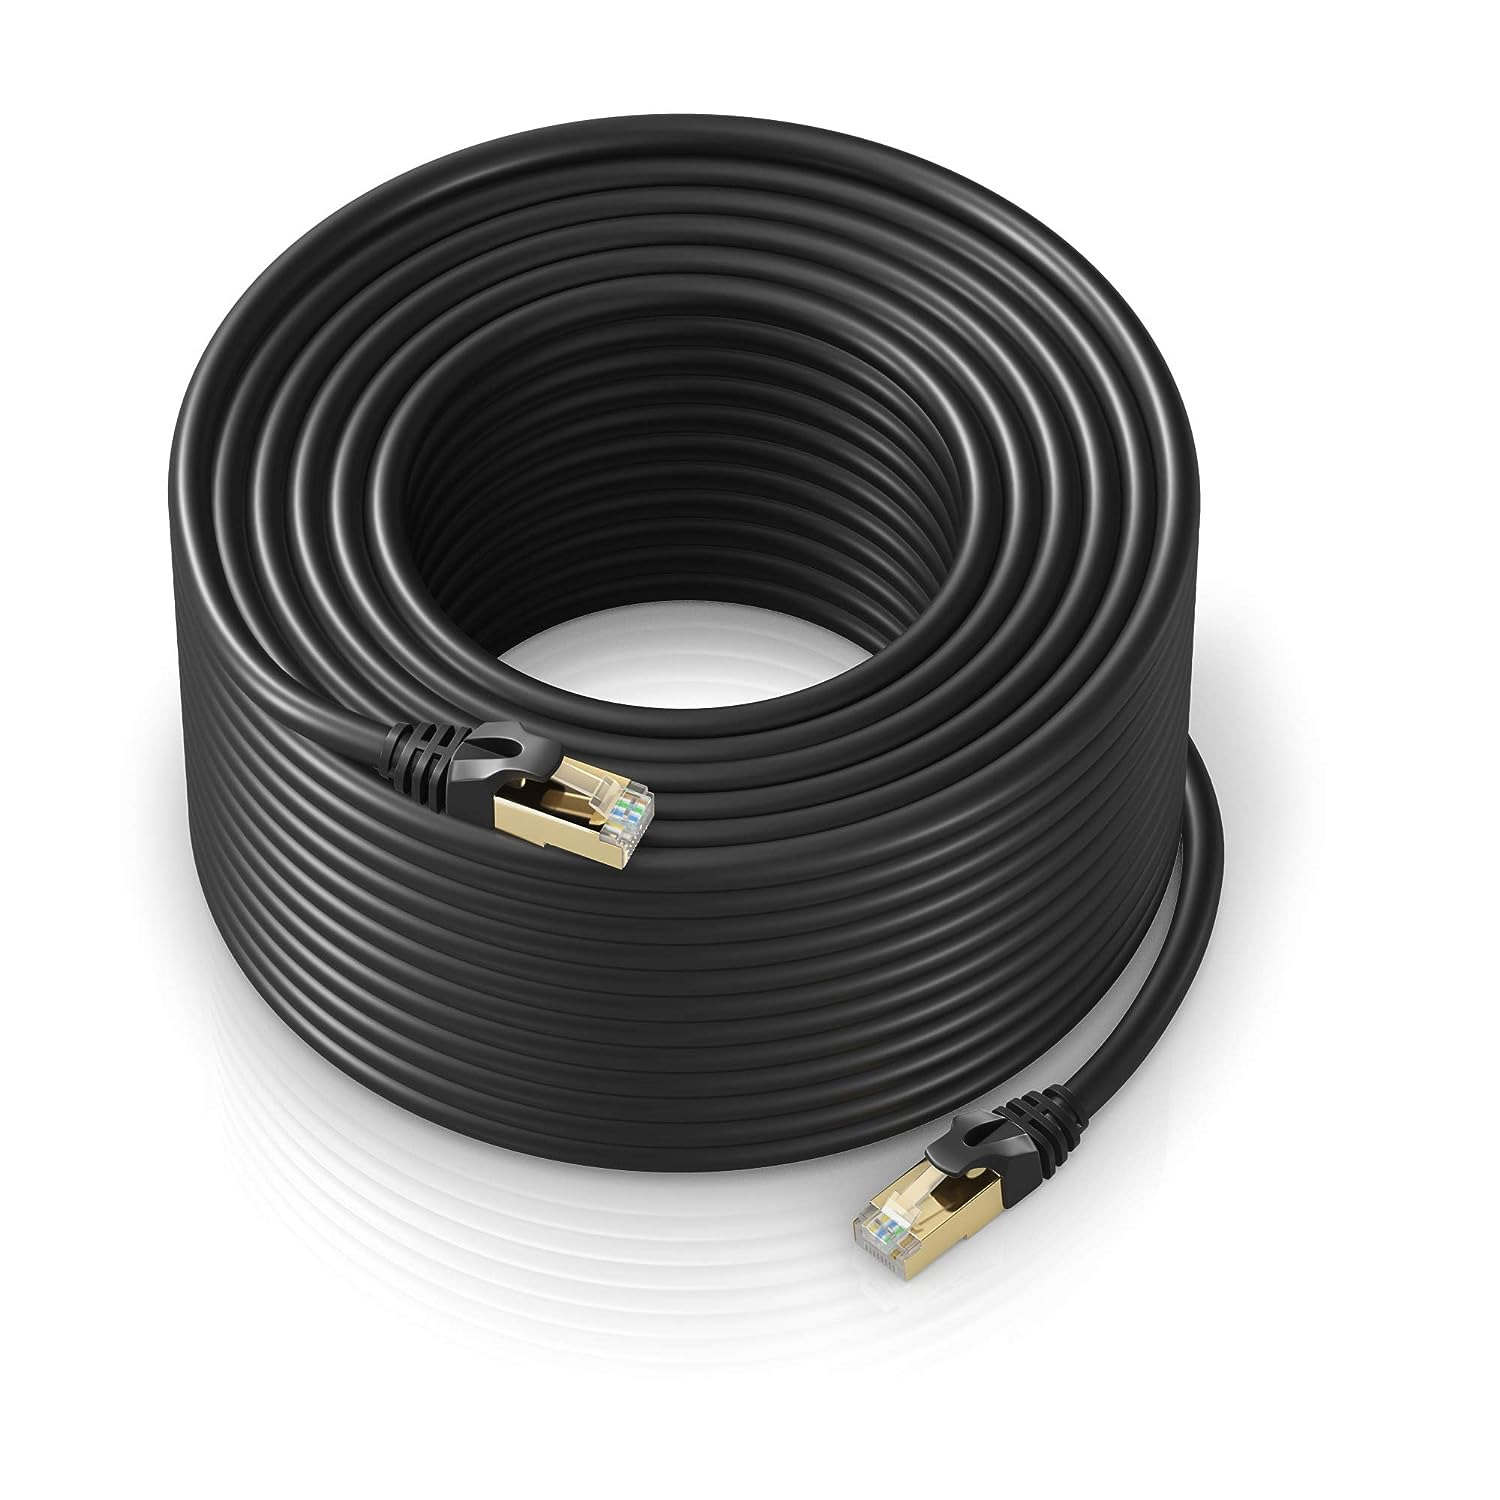 Cat 7 Ethernet Cable 300 ft - Internet & Network LAN Patch Cable, RJ45 Connec.